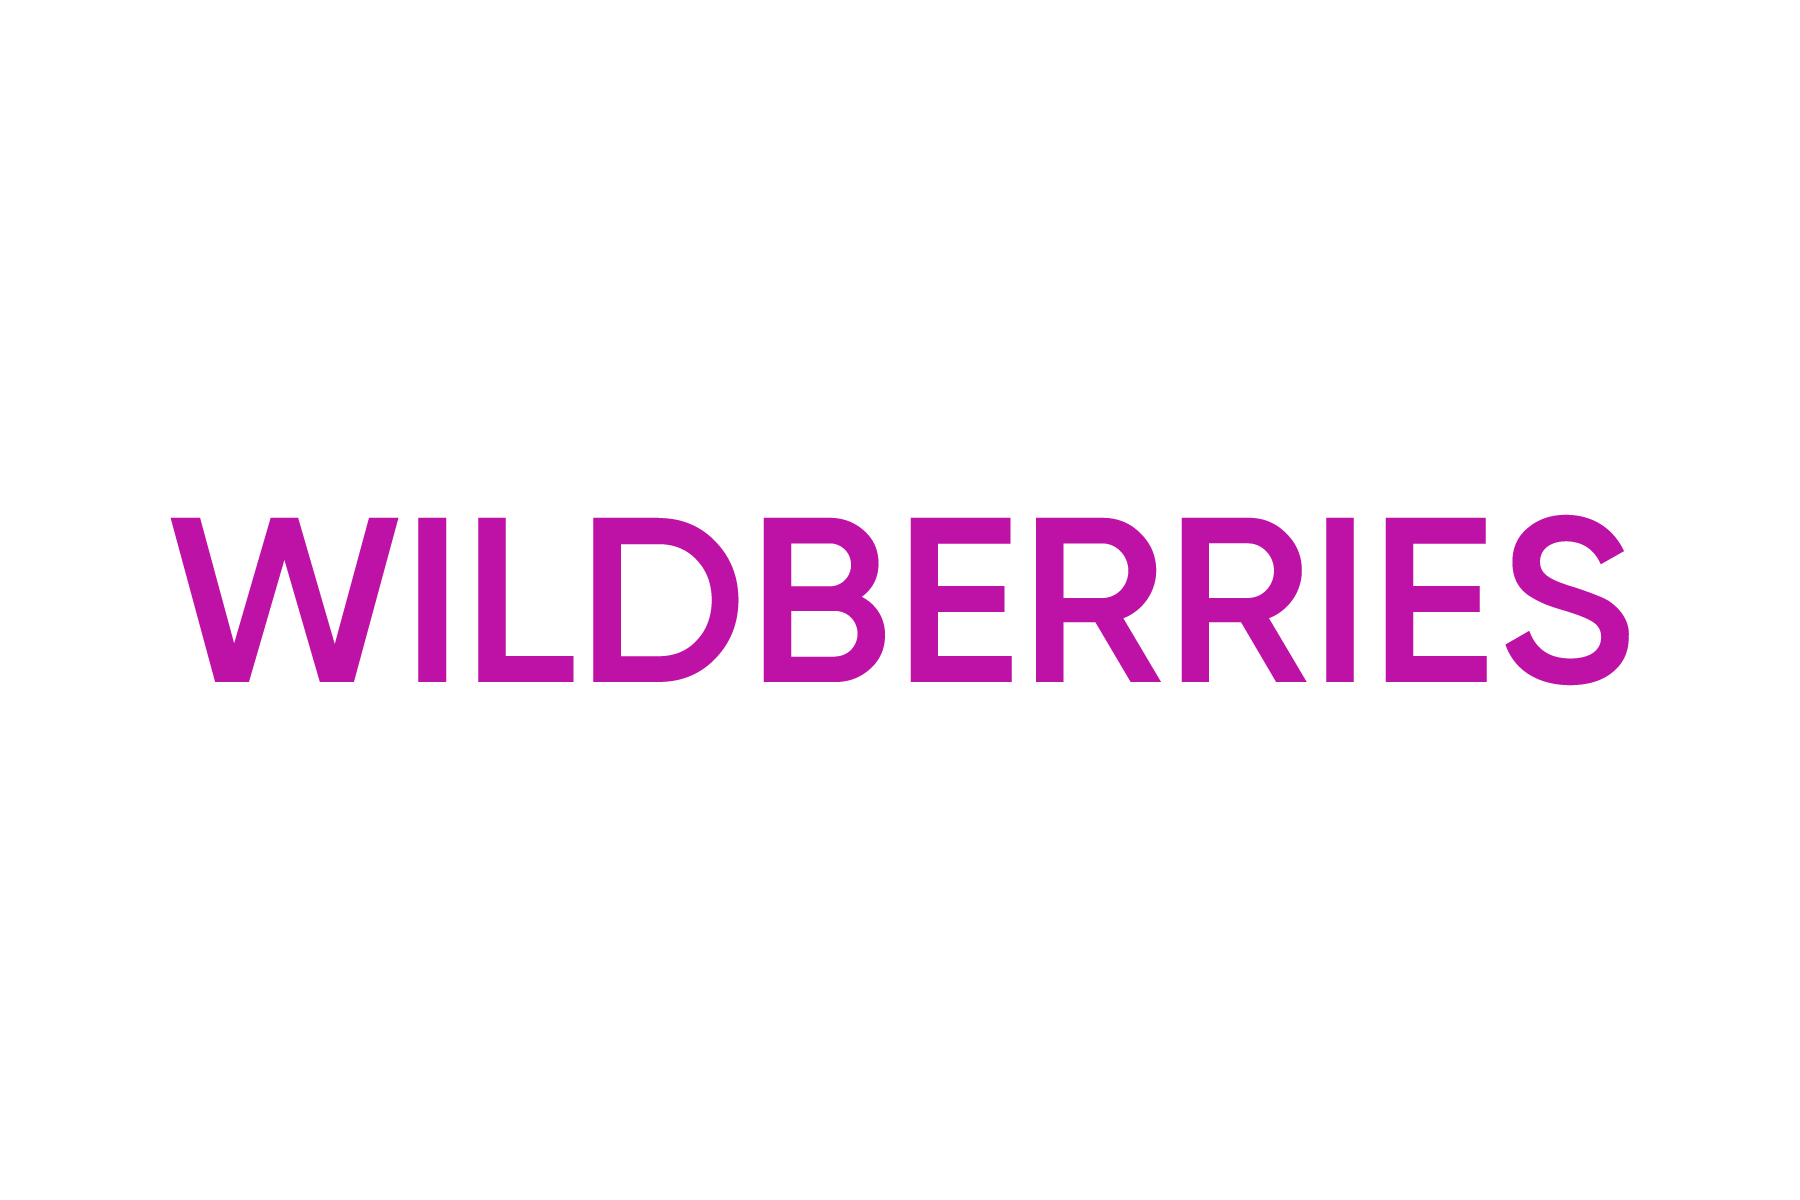 Wildberries. Wildberries лого. Надпись Wildberries. Логотип ва.